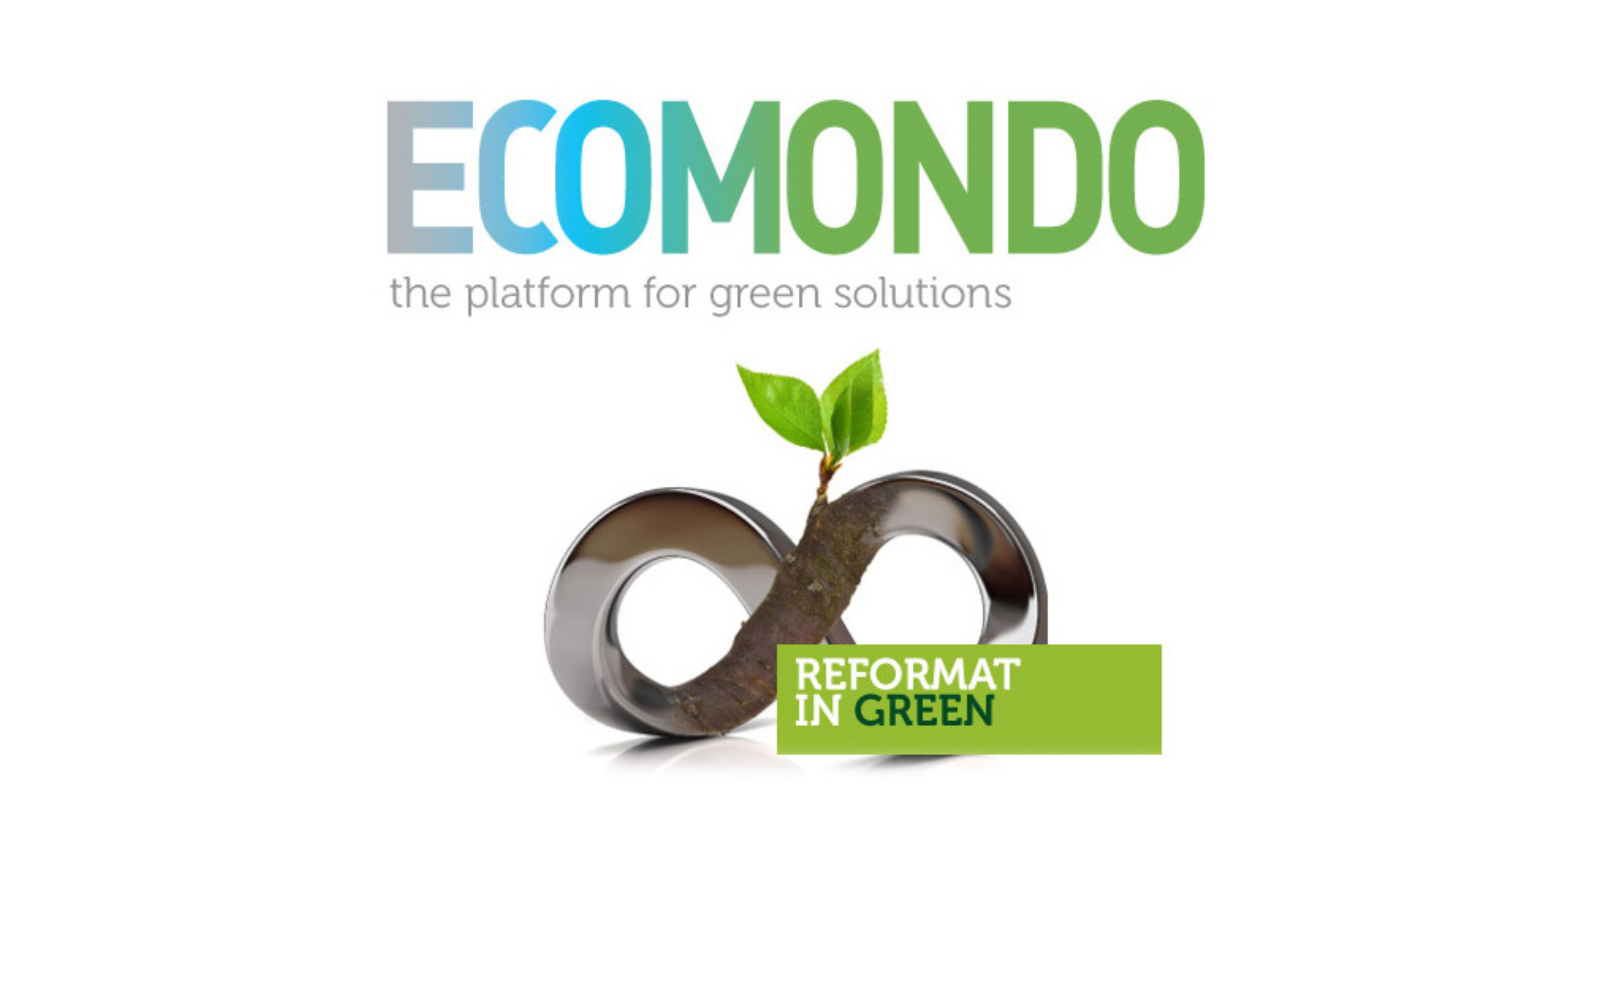 Выставка передовых технологий в сфере переработки и управления отходами  “Ecomondo”, 8-11 ноября 2016 г.